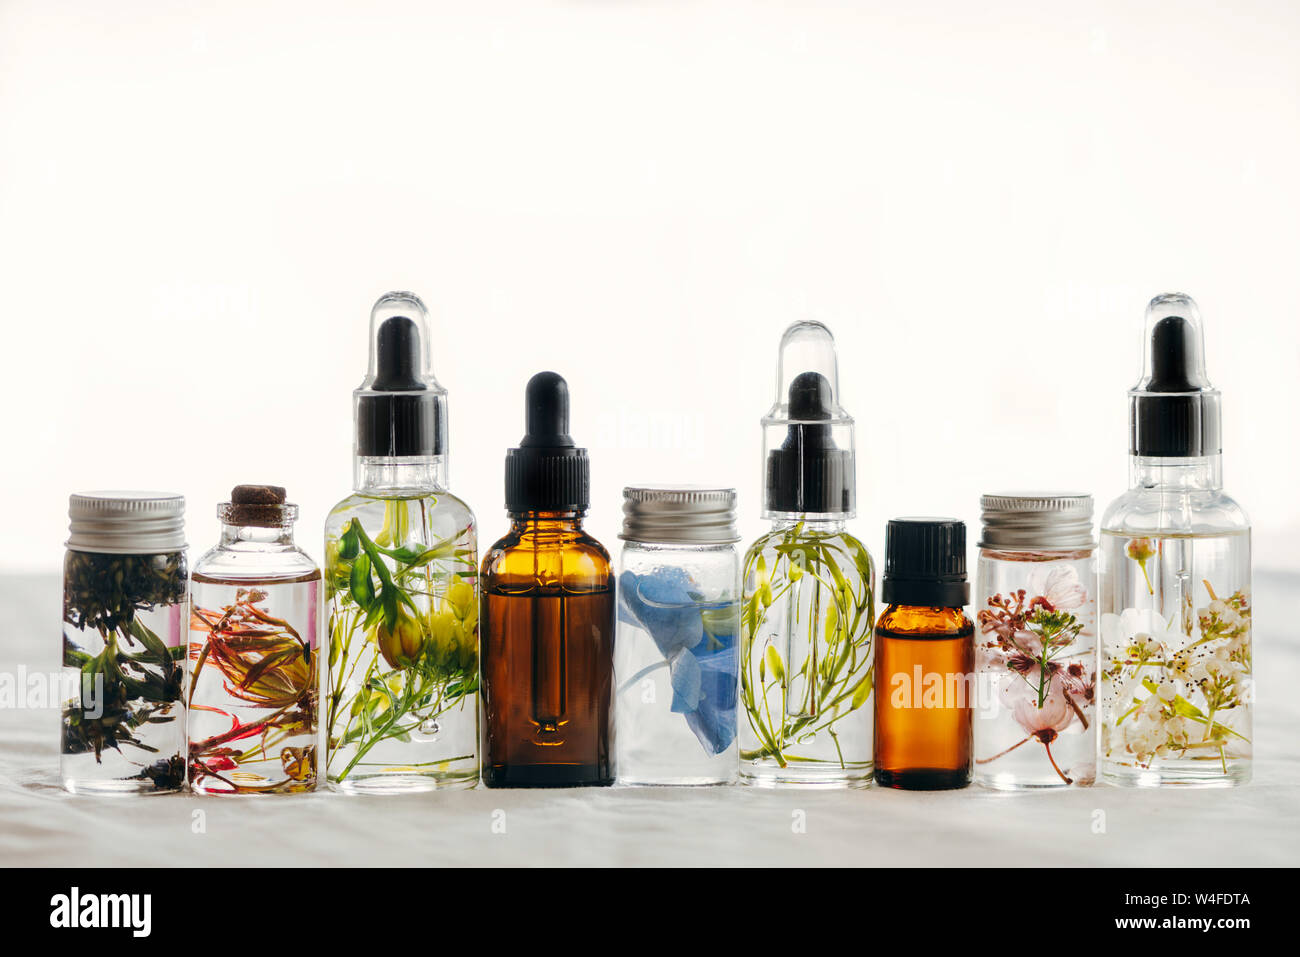 Transparente Flaschen des wesentlichen Öls mit frischen Kräutern und Blumen, natürliche Behandlung für Massage, Aromatherapie oder Spa. Natürliche Medikamente Stockfoto